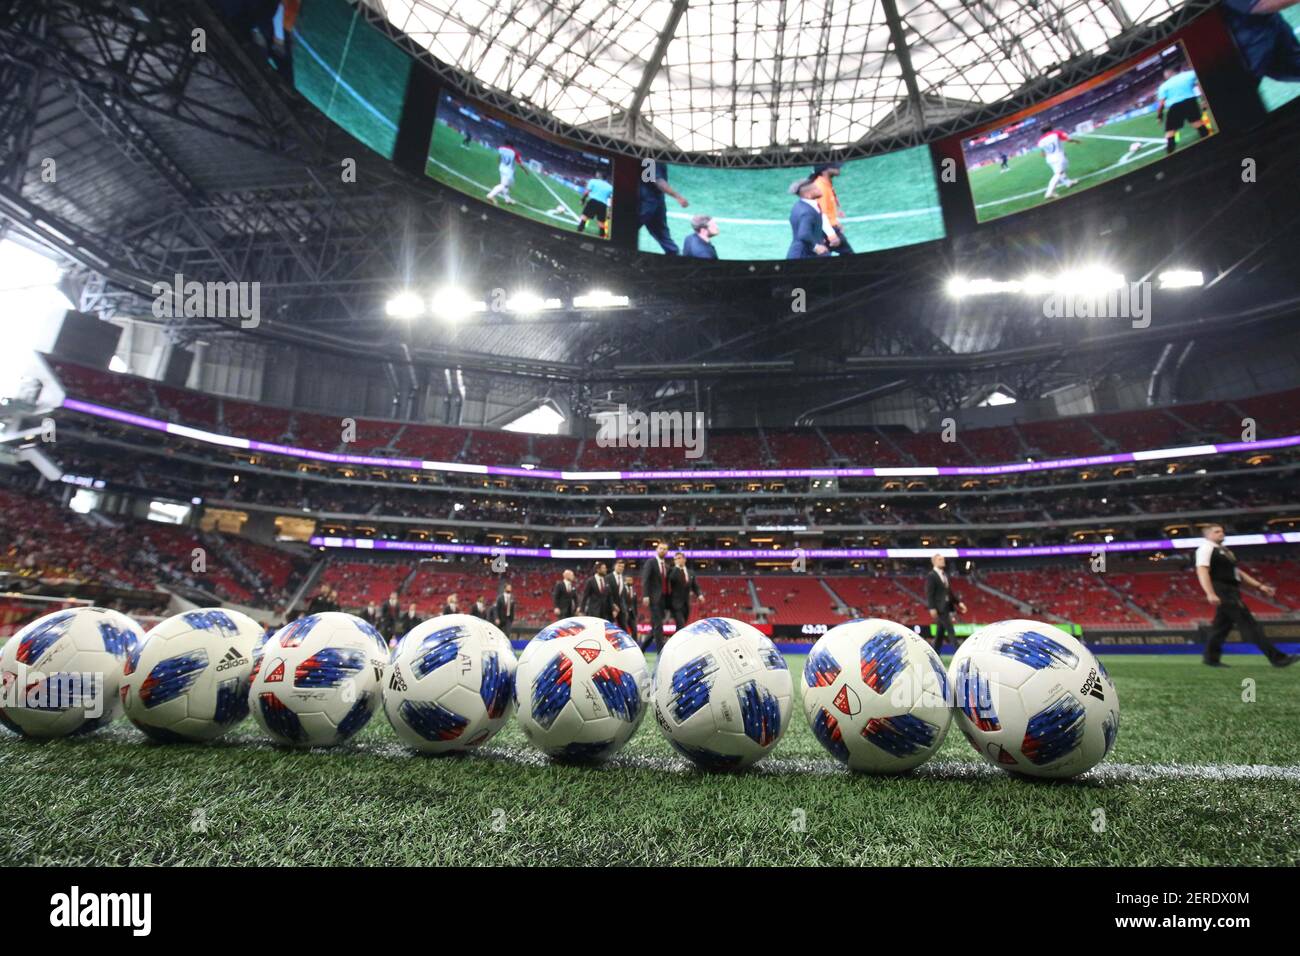 15 luglio 2018; Atlanta, GA, Stati Uniti; Le palle da calcio MLS vengono  mostrate prima della partita contro Seattle Sounders e l'Atlanta United  allo stadio Mercedes-Benz. Credito obbligatorio: Jason Getz-USA TODAY Sports